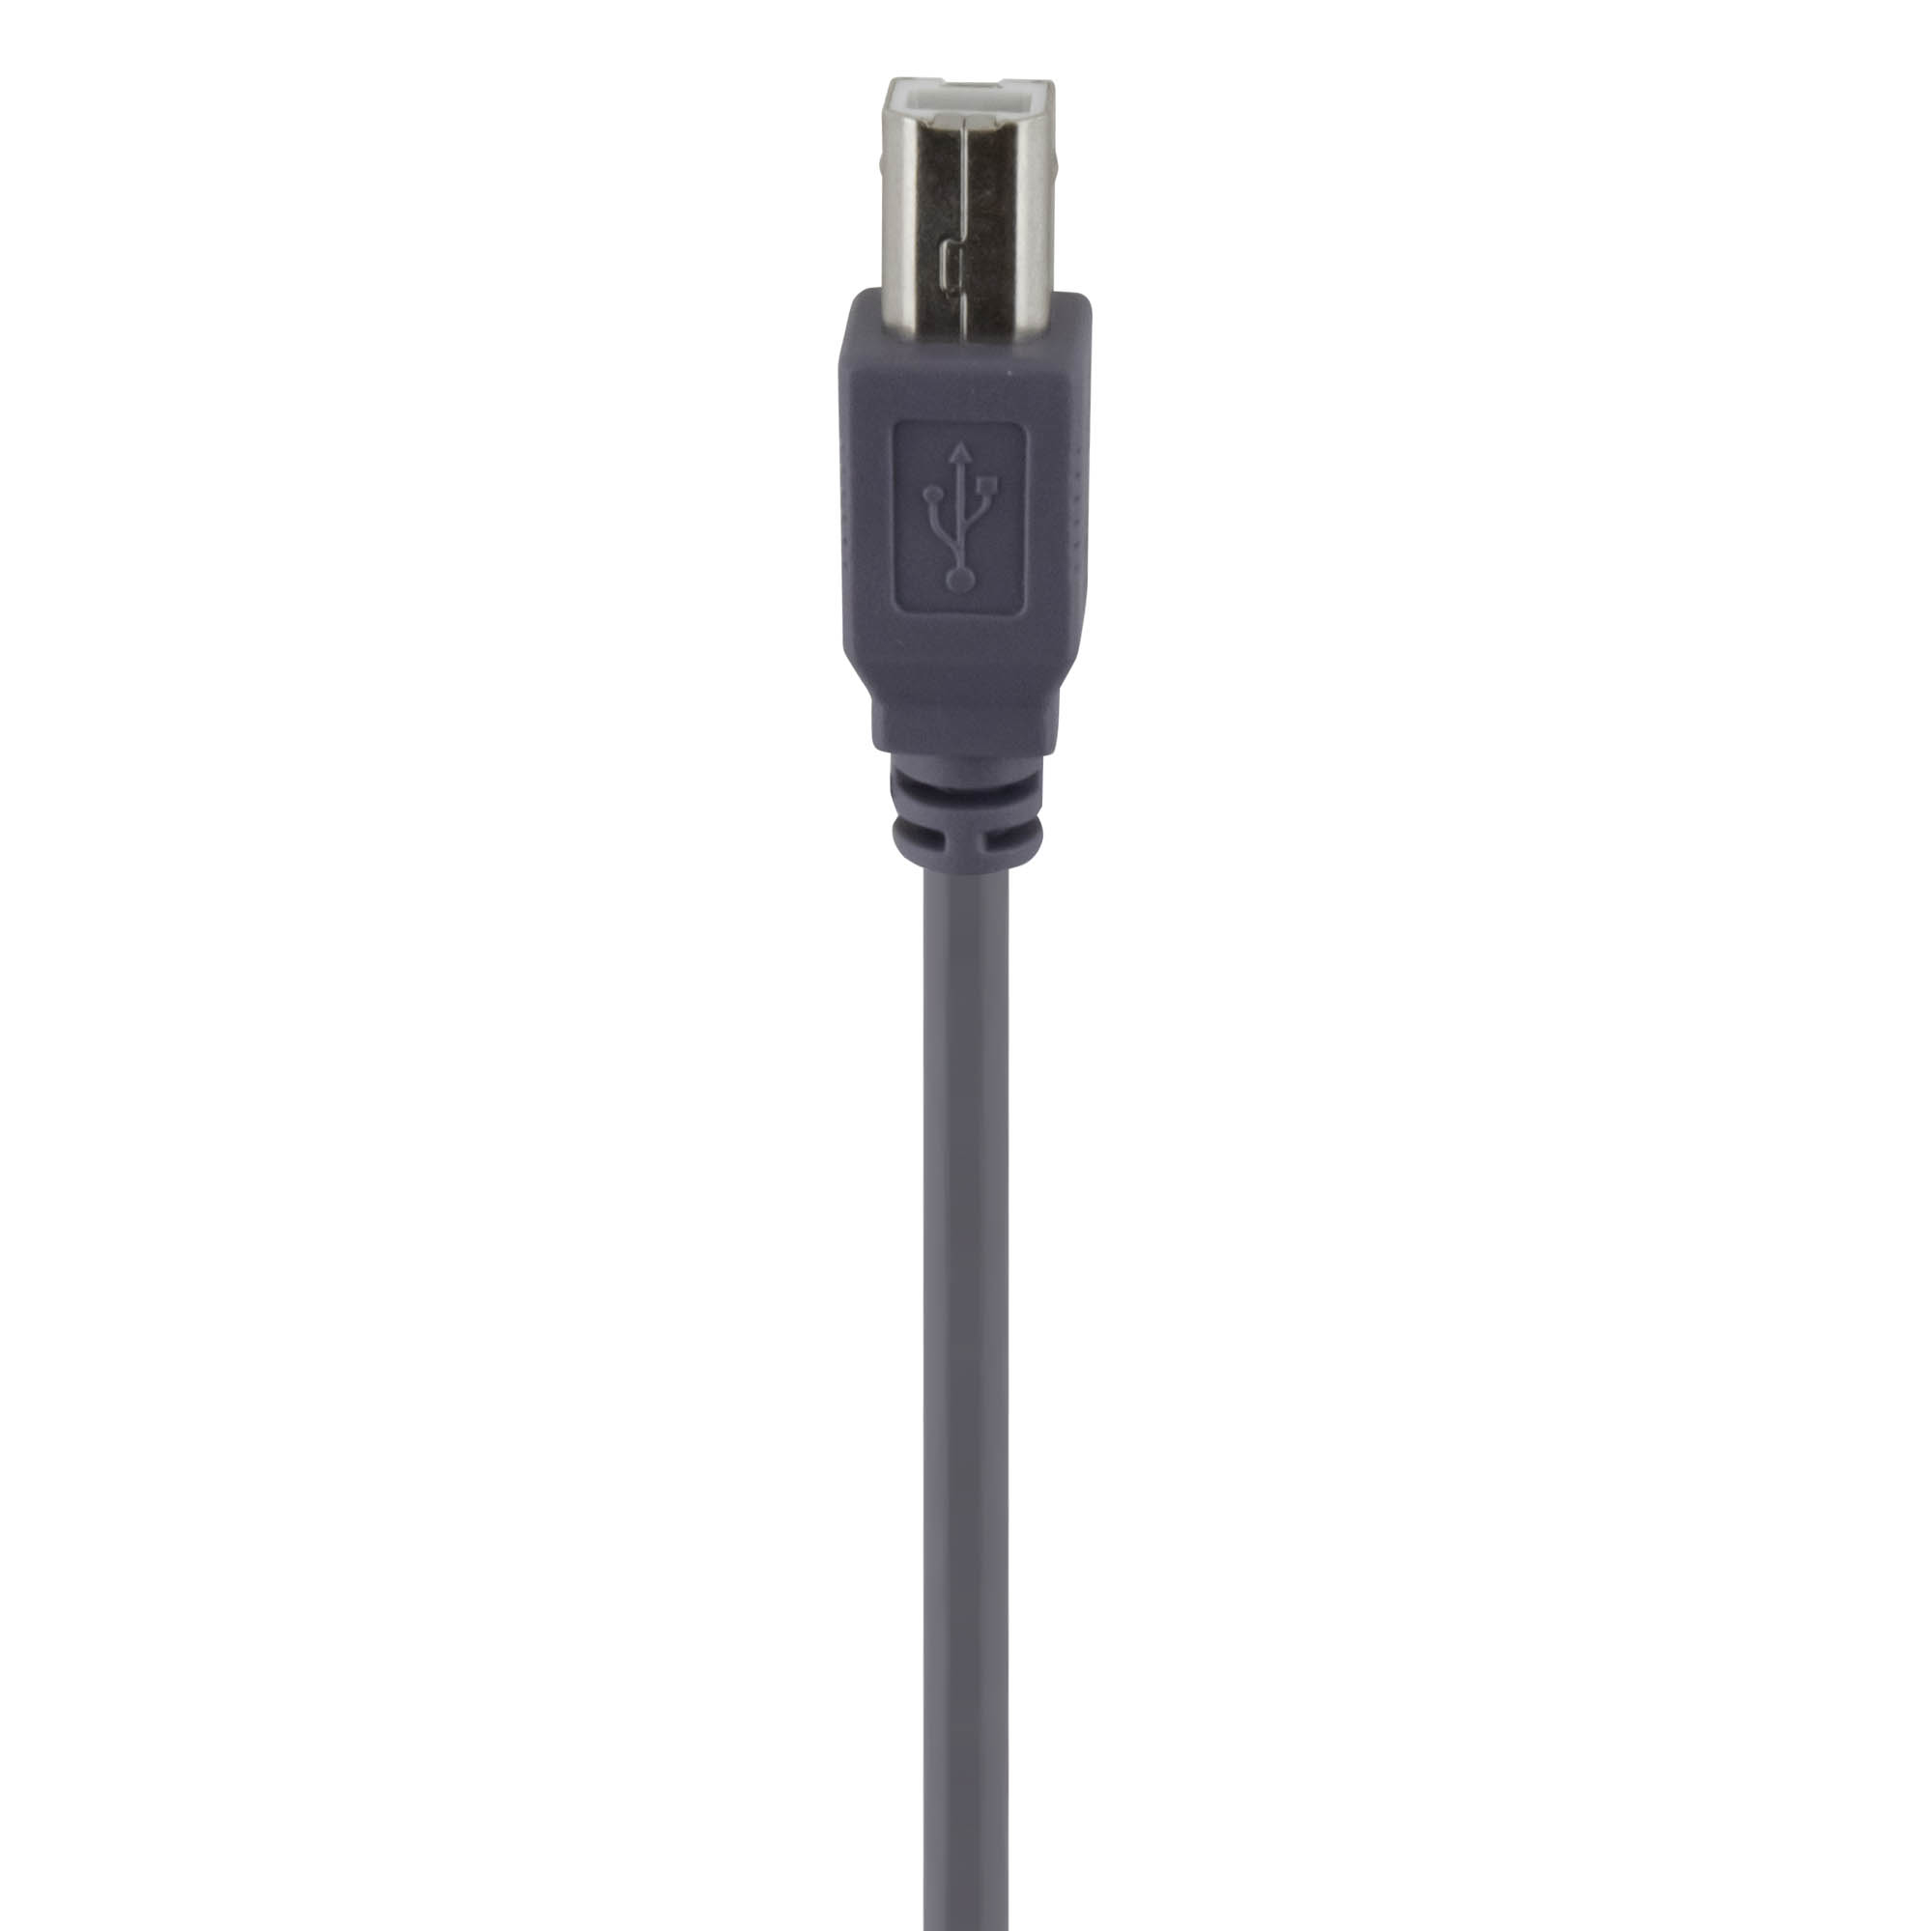 USB Kabel A Stecker - B Stecker 1,80m